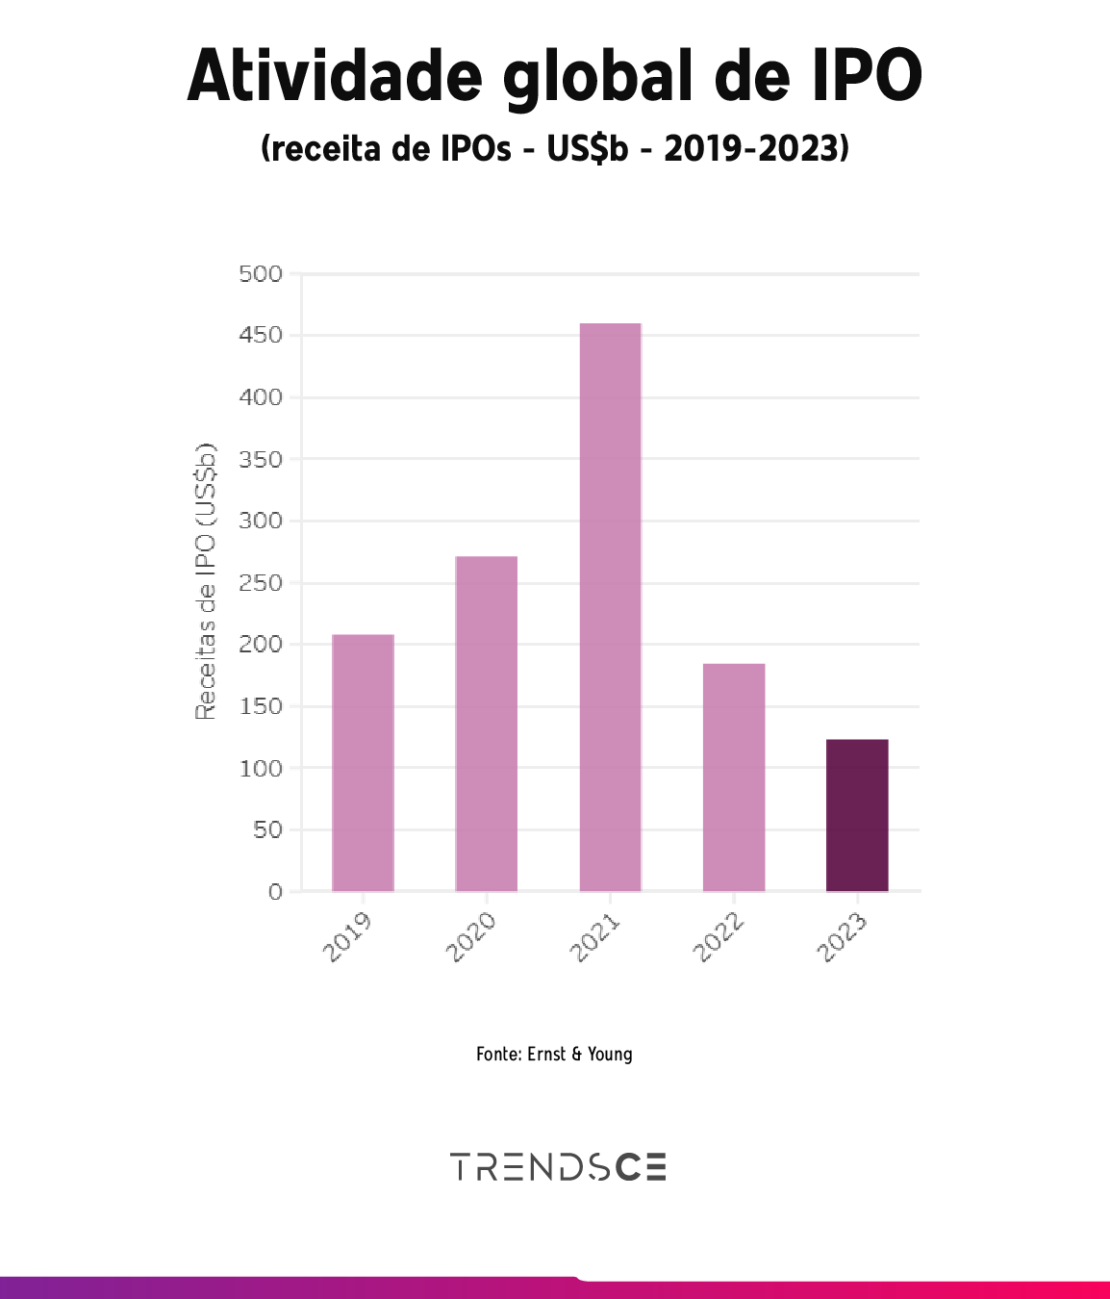 Gráfico sobre a atividade global de IPO por receita de IPOs em bilhões de dólares entre 2019 e 2023